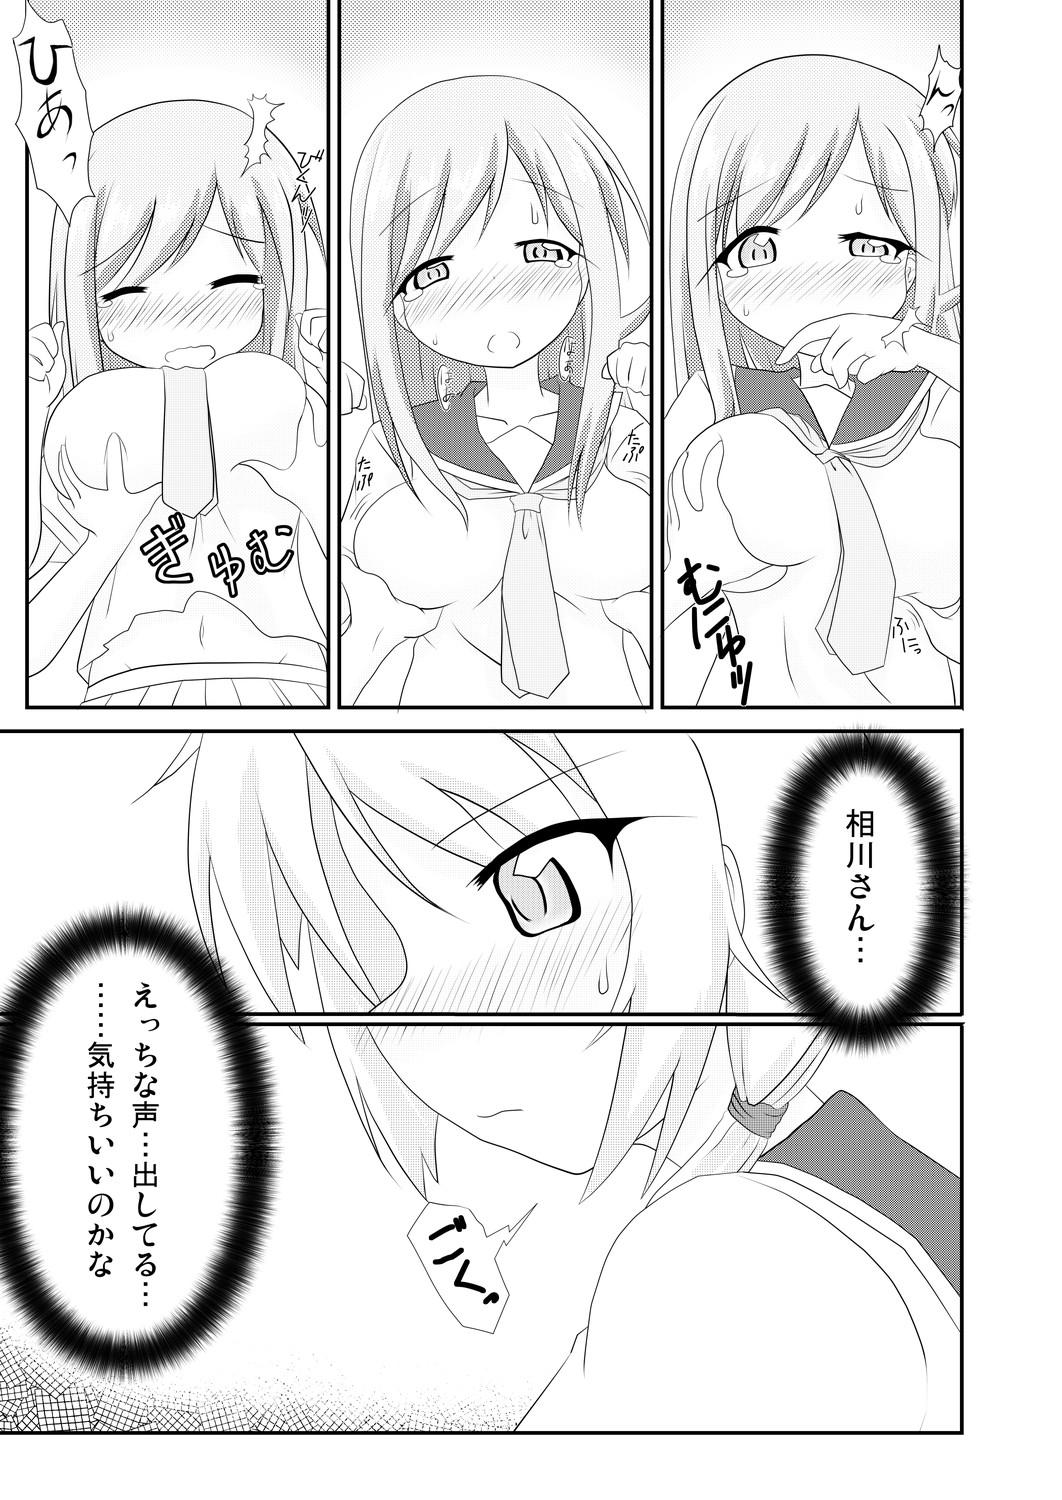 Anime Yui x Ai - Yuyushiki Cumming - Page 8